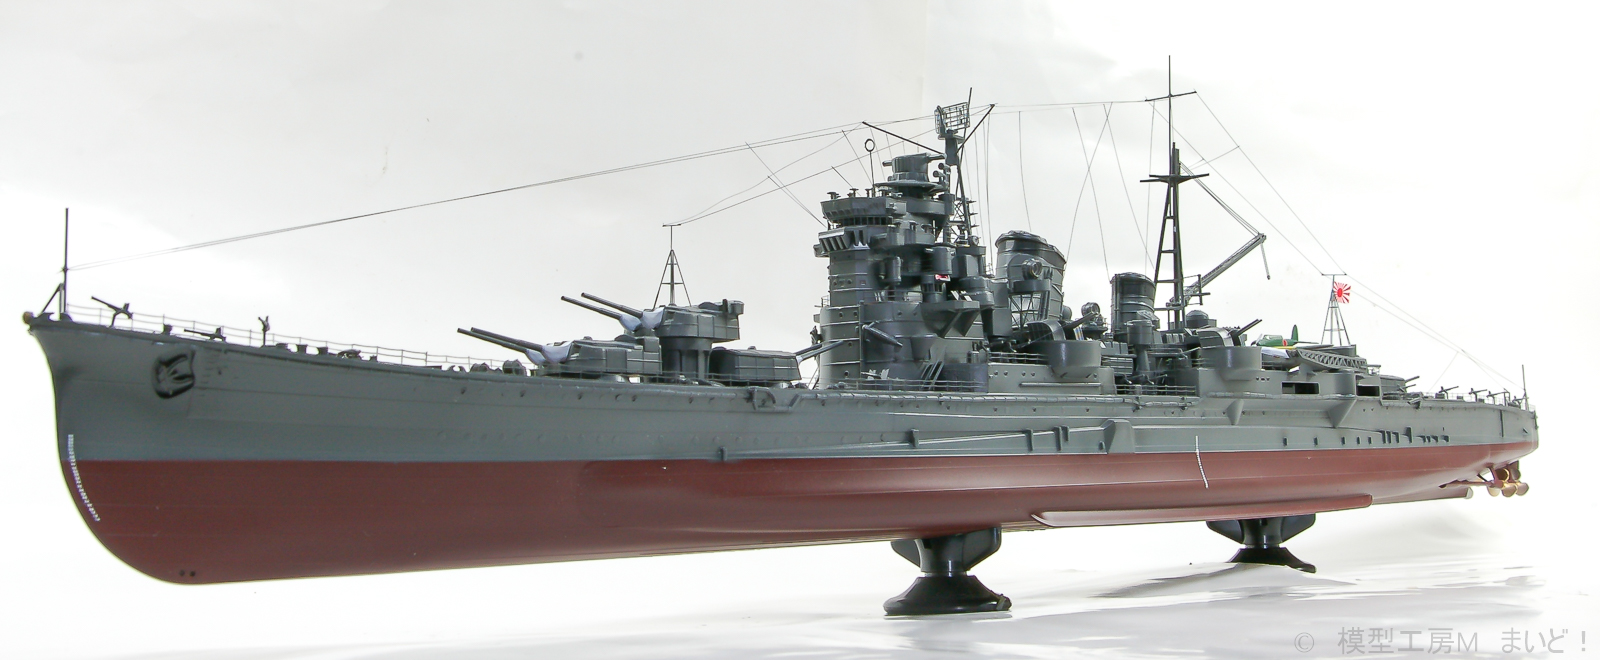 アオシマ 1/350 日本海軍重巡洋艦「足柄」 完成 AOSHIMA ASHIGARA 